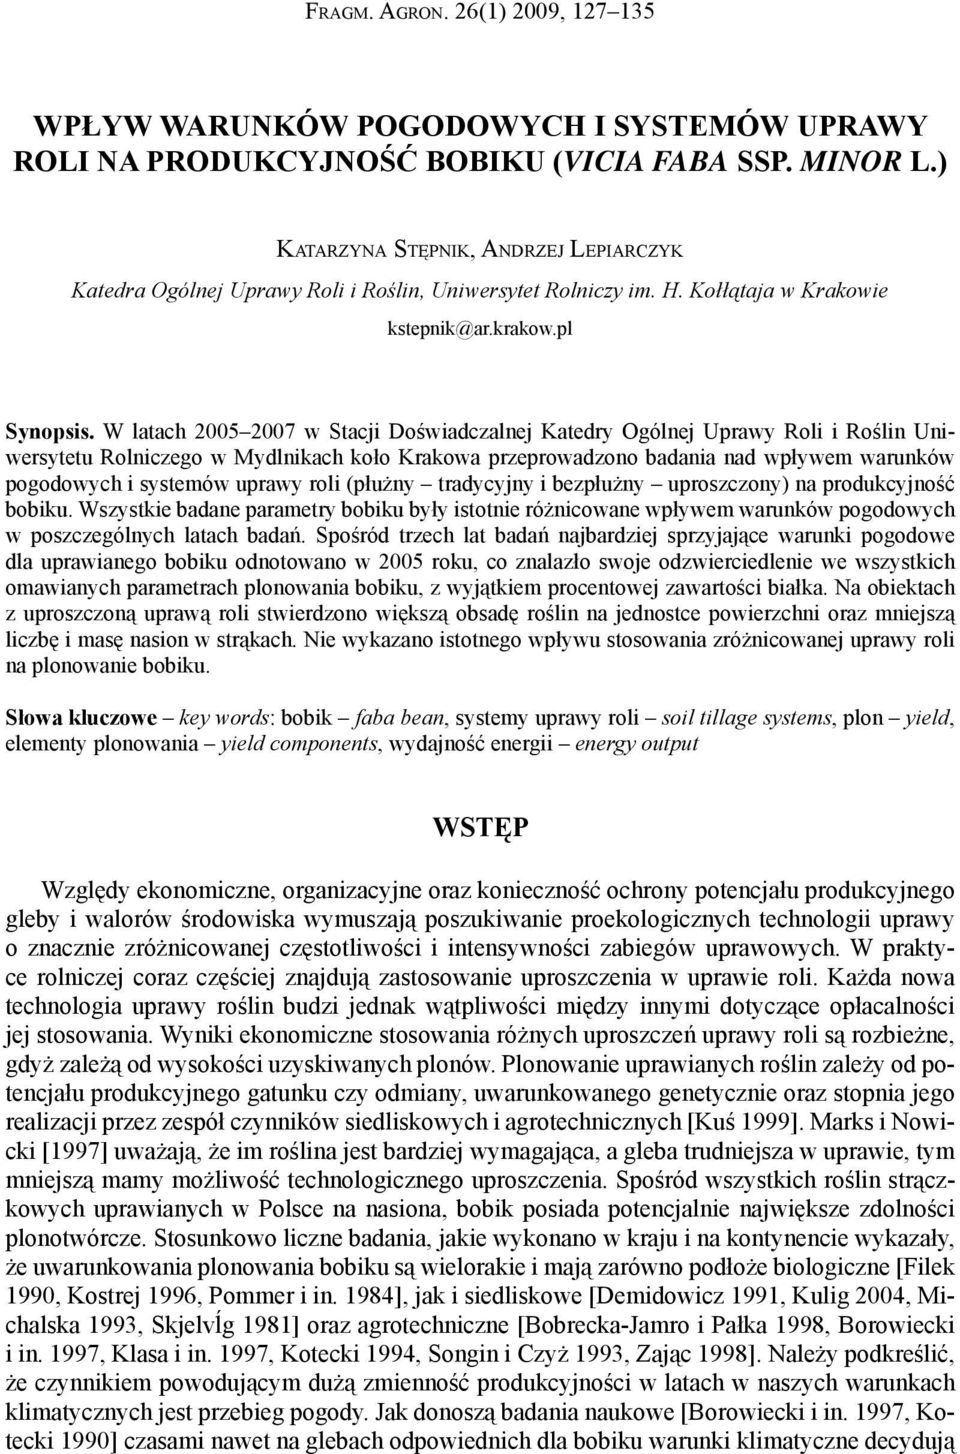 W latach 2005 2007 w Stacji Doświadczalnej Katedry Ogólnej Uprawy Roli i Roślin Uniwersytetu Rolniczego w Mydlnikach koło Krakowa przeprowadzono badania nad wpływem warunków pogodowych i systemów